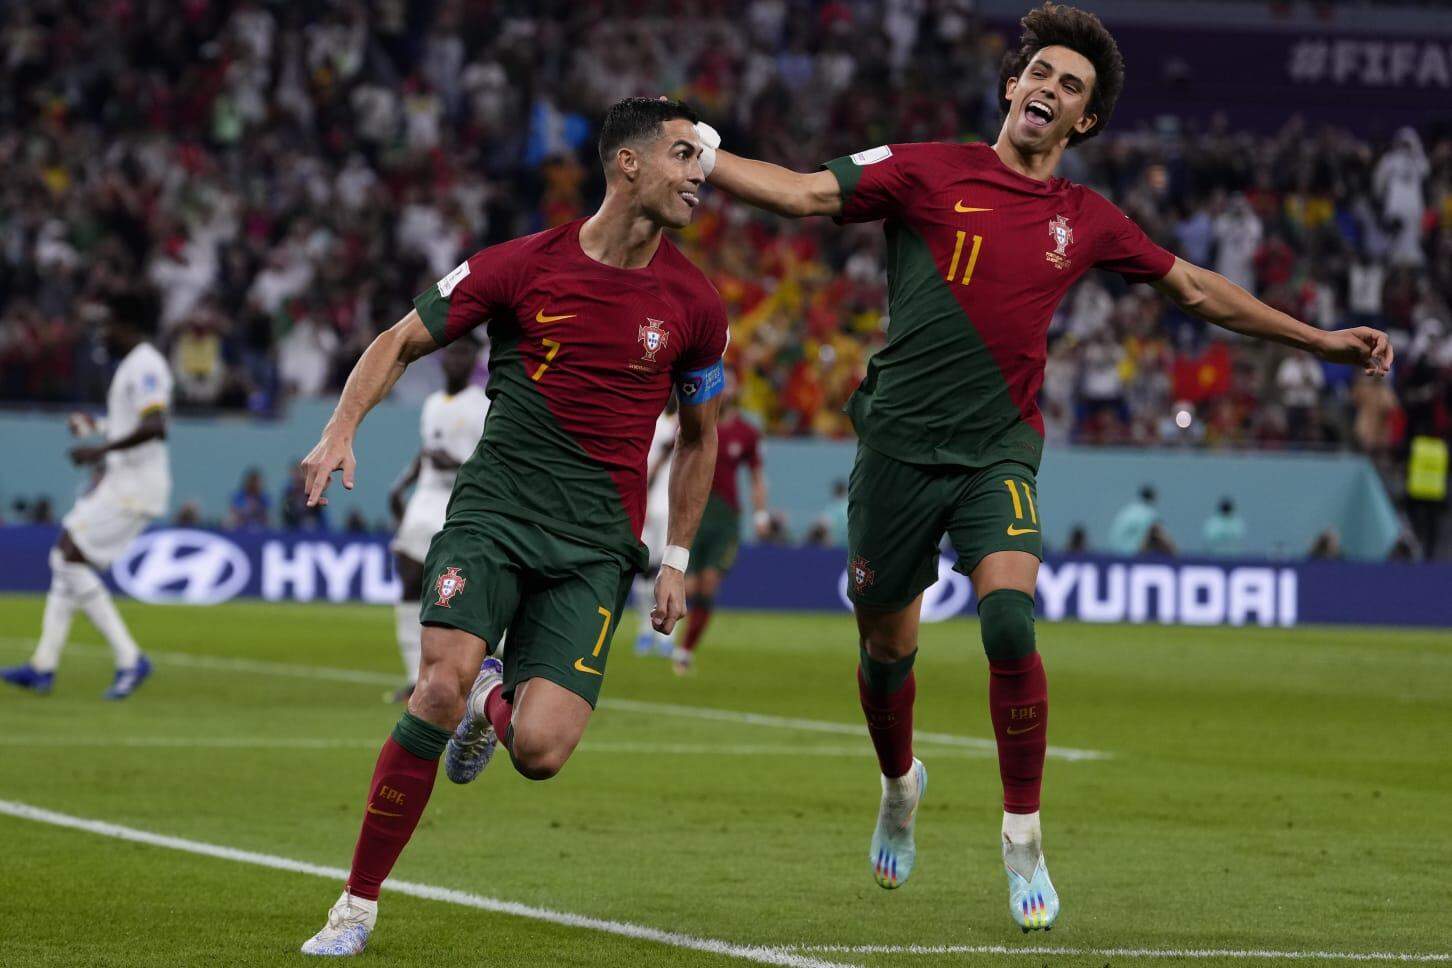 Cristiano Ronaldo na Copa do Mundo: veja gols, jogos e história do atacante, portugal